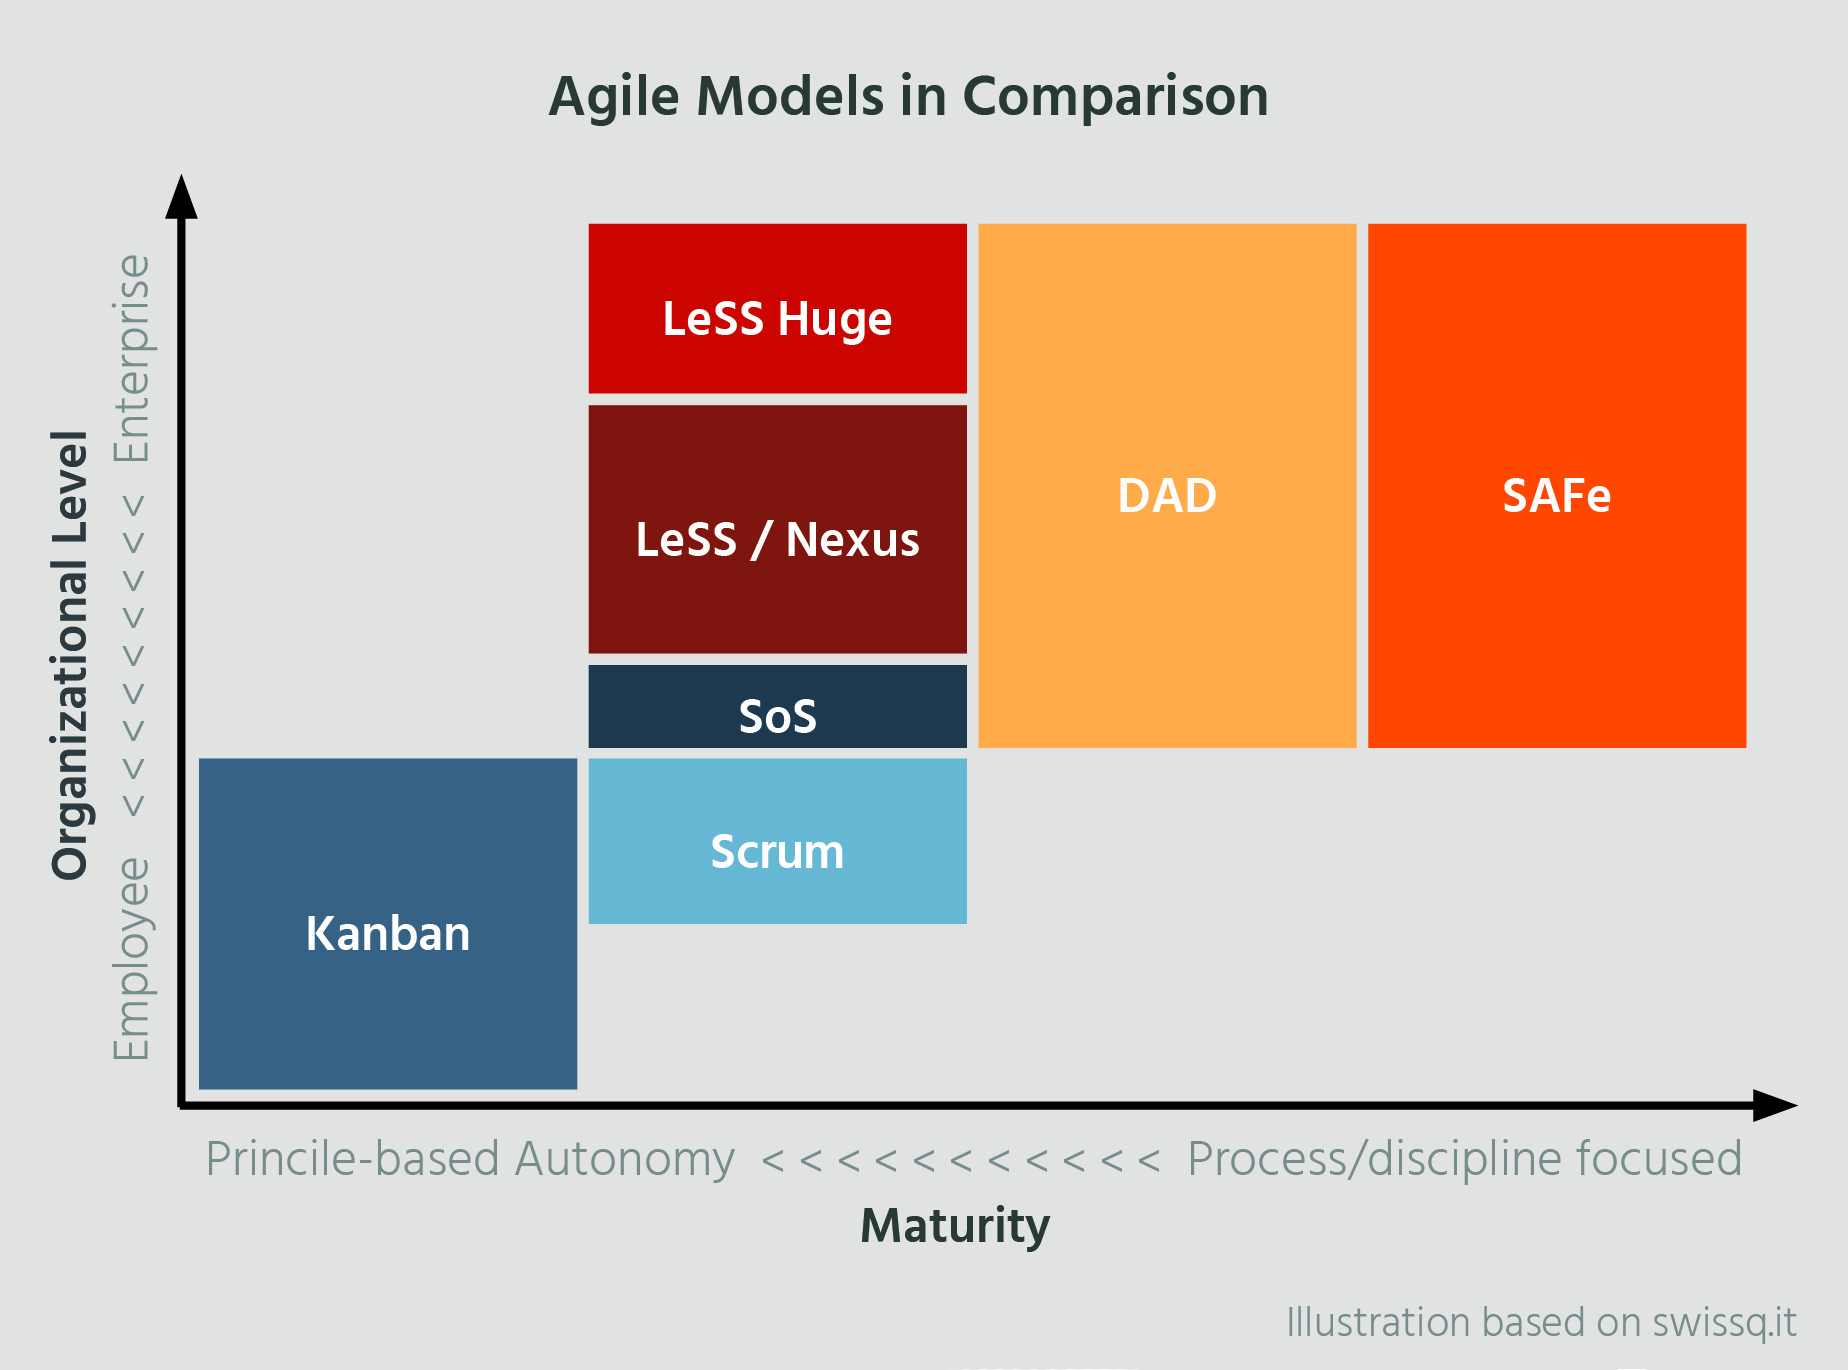 Agile models in comparison